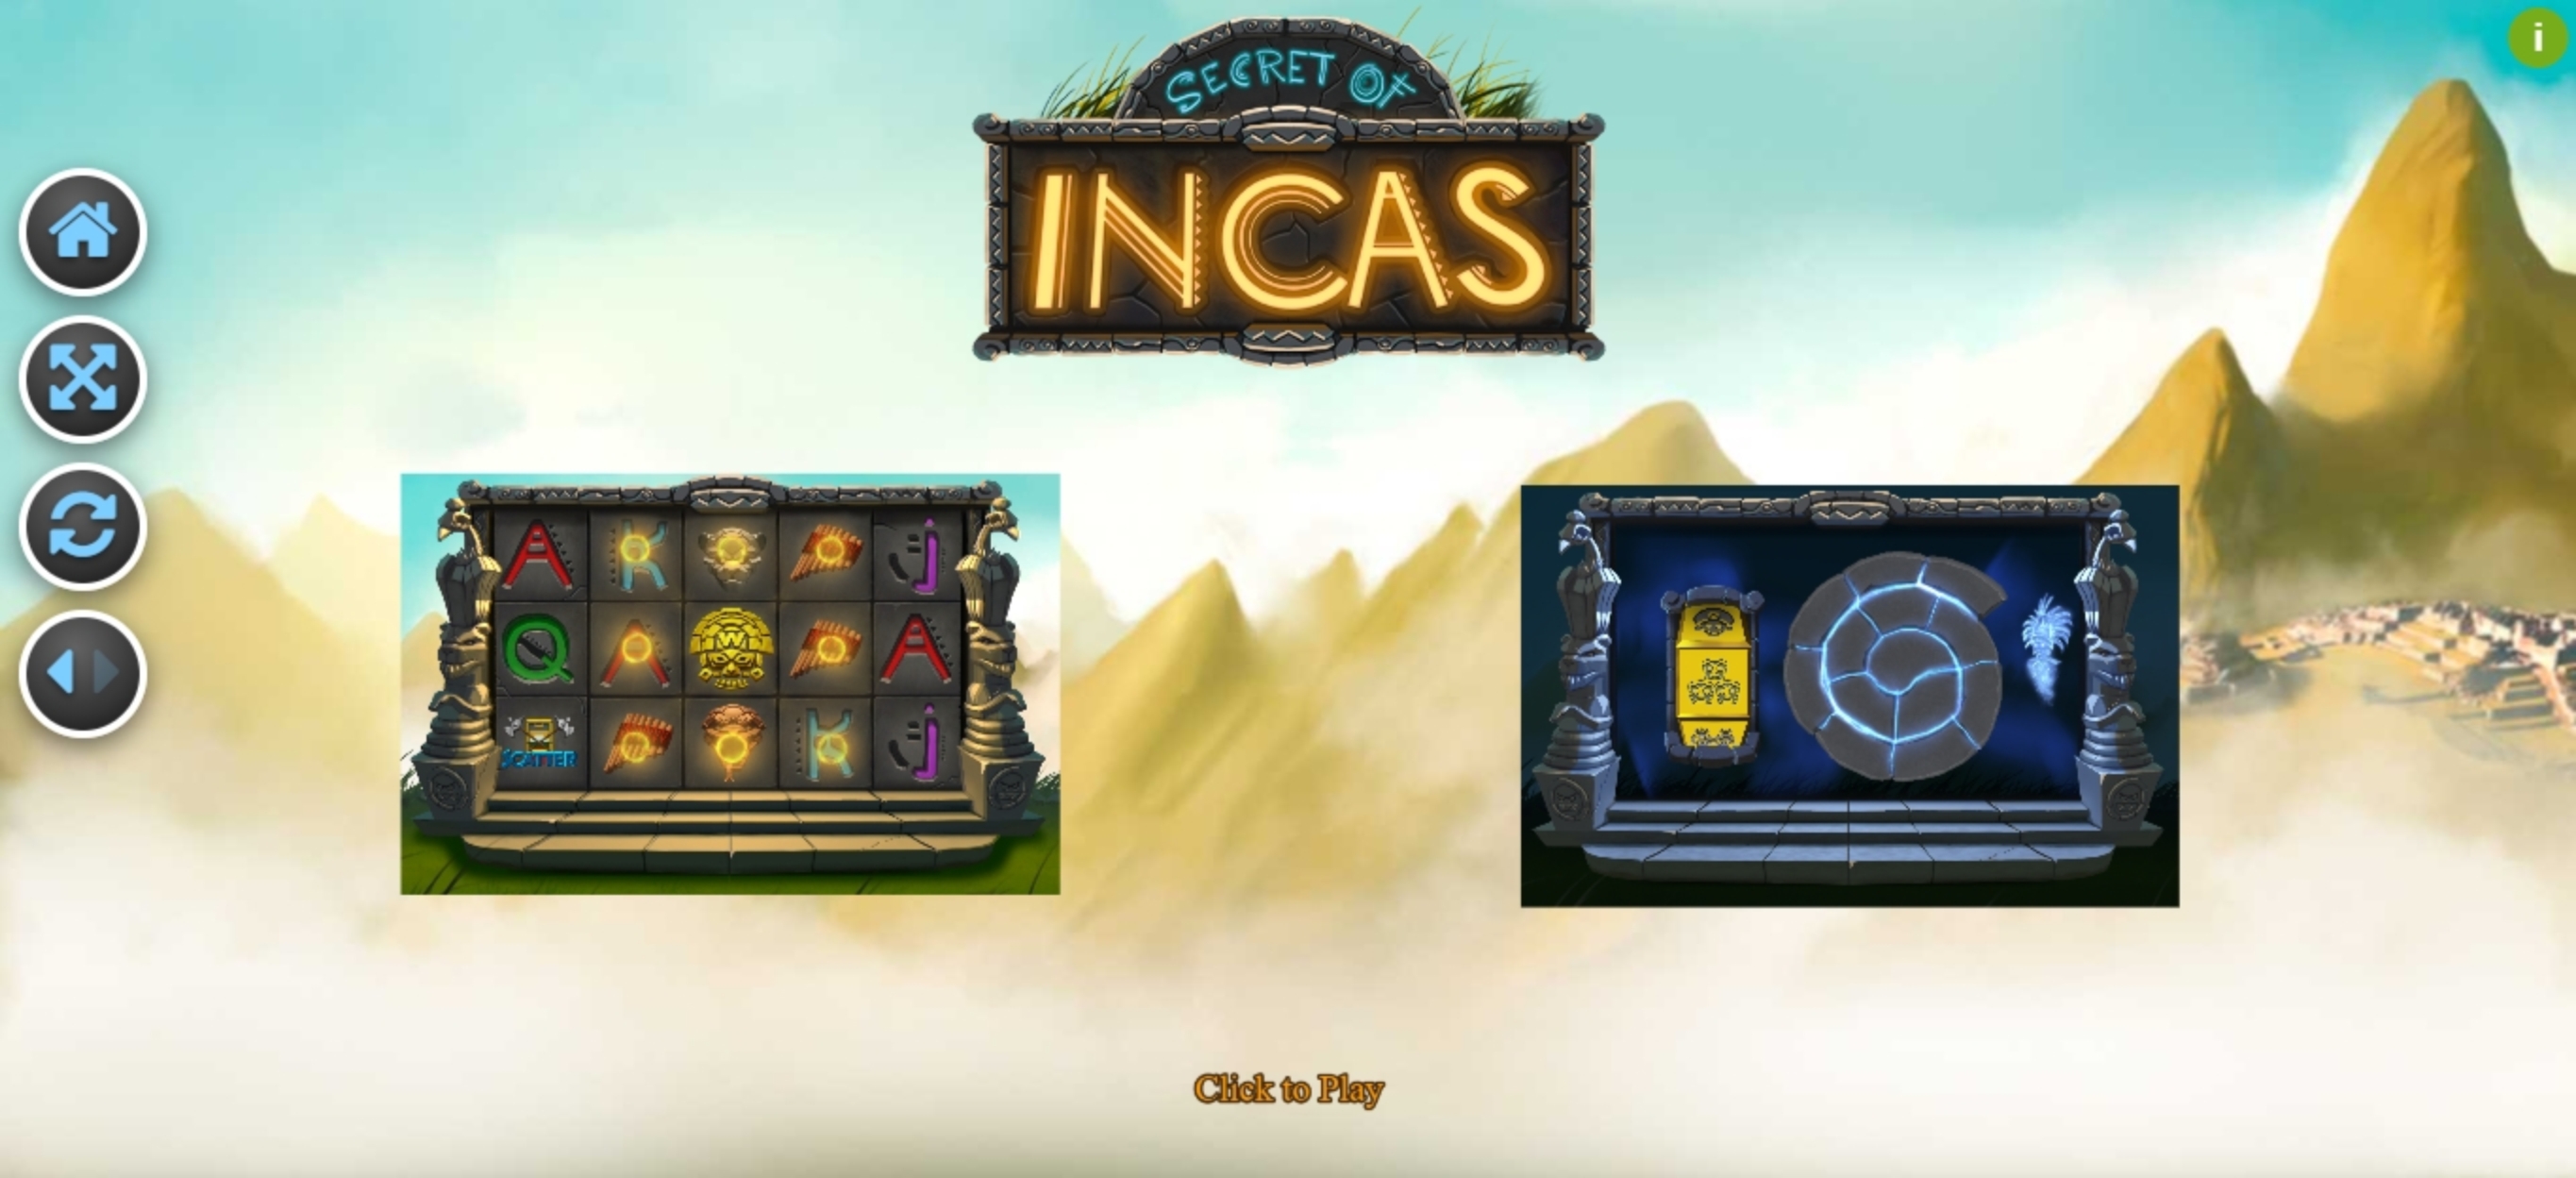 Play Secret of Incas Free Casino Slot Game by R. Franco